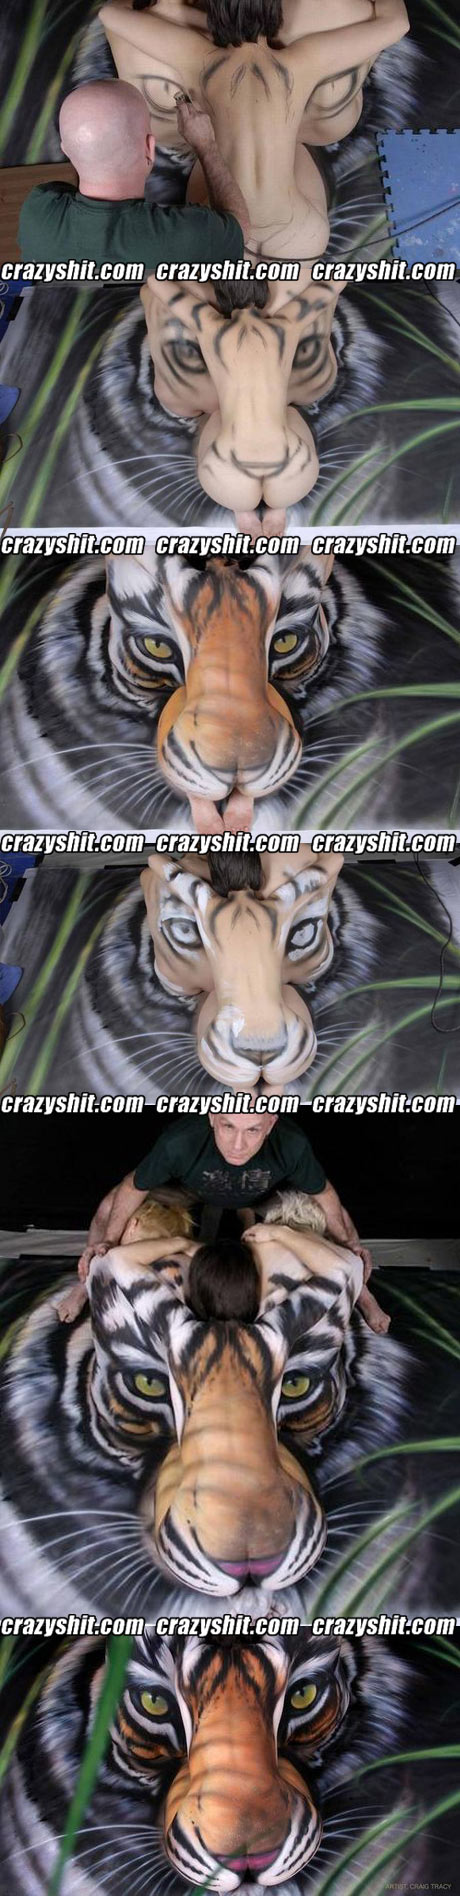 A true artist, ass and tigers